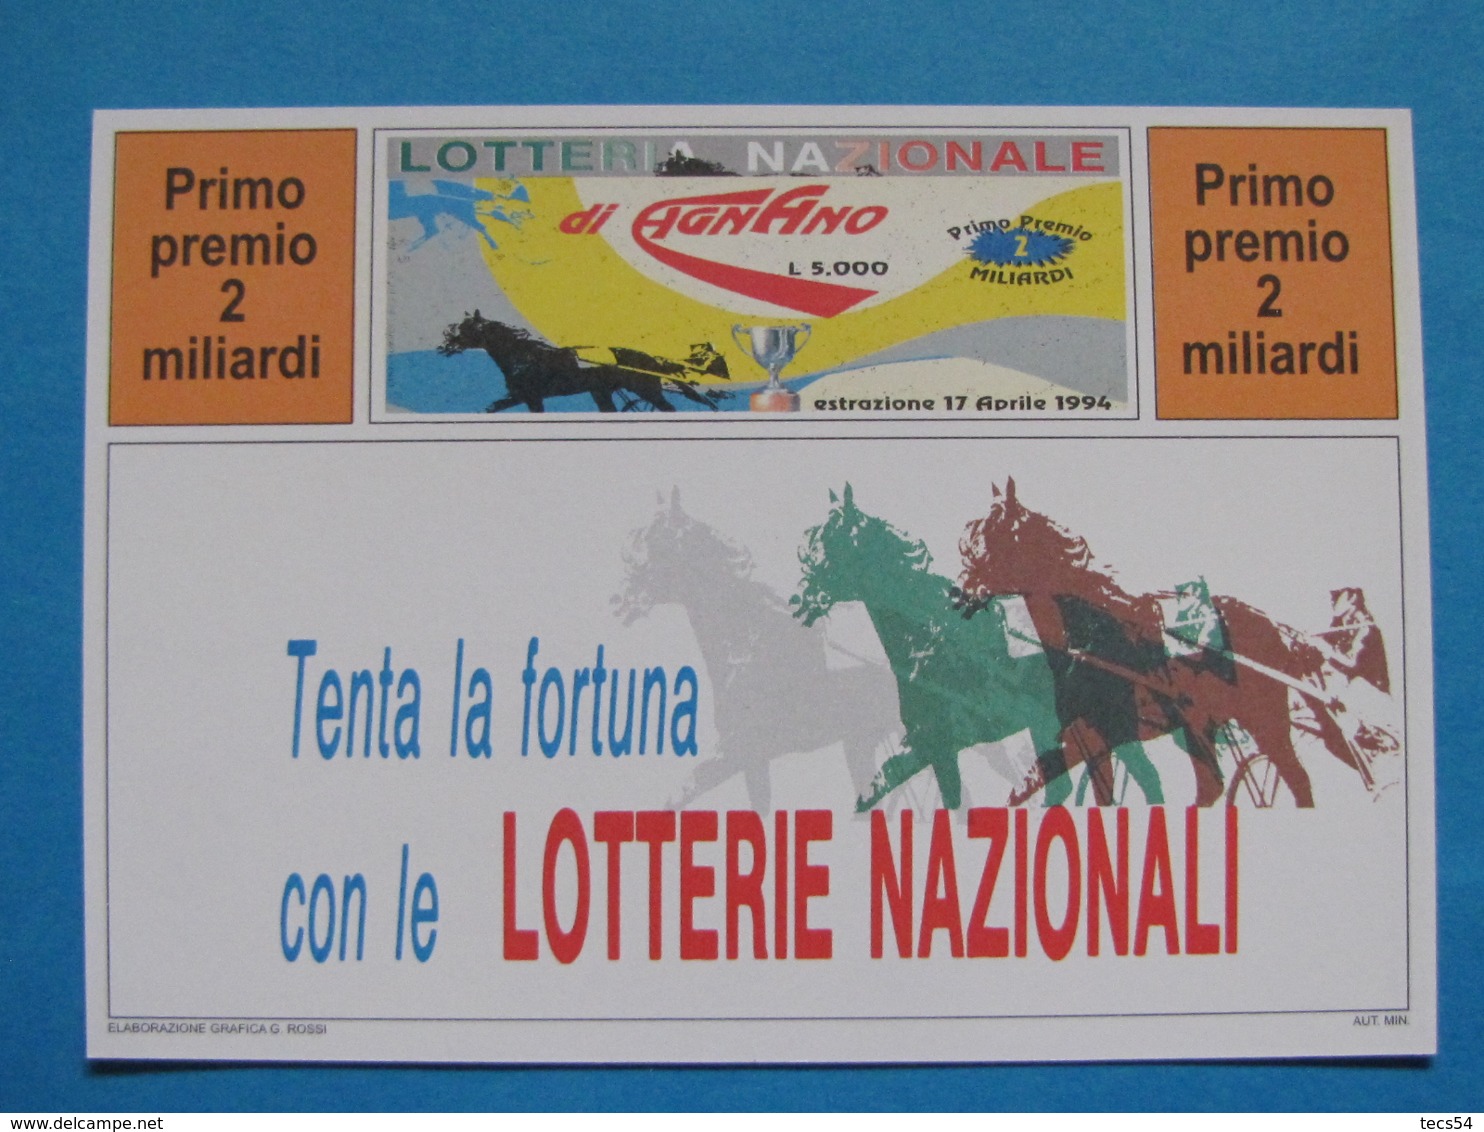 CARTOLINA LOTTERIA NAZIONALE AGNANO 1994 - Biglietti Della Lotteria